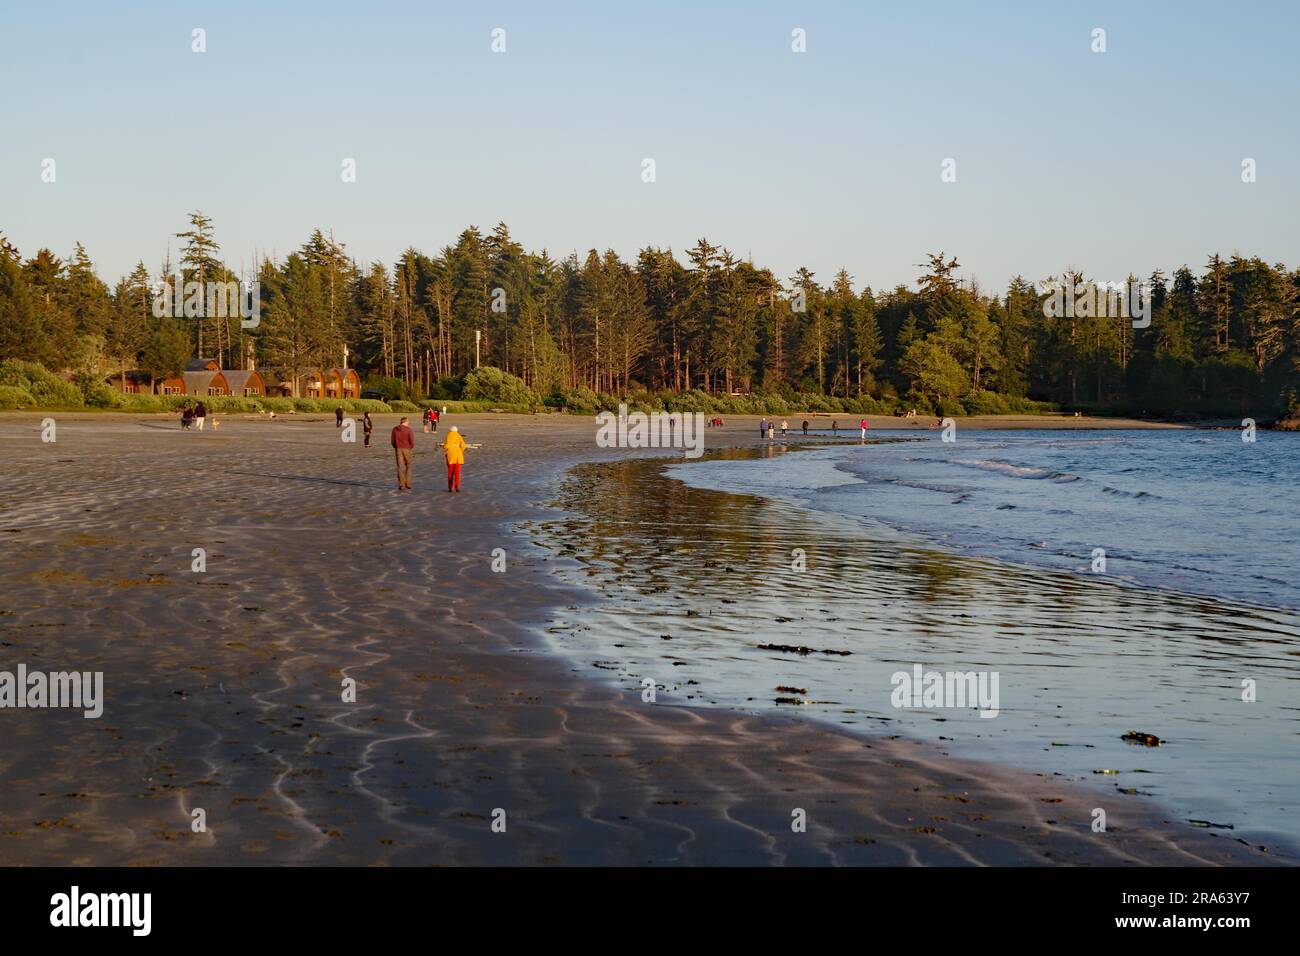 Persone su una lunga spiaggia sabbiosa, foresta e case di legno, vacanze, Mackenzie Beach, Tofino, Vancouver Island, British Columbia, Canada Foto Stock